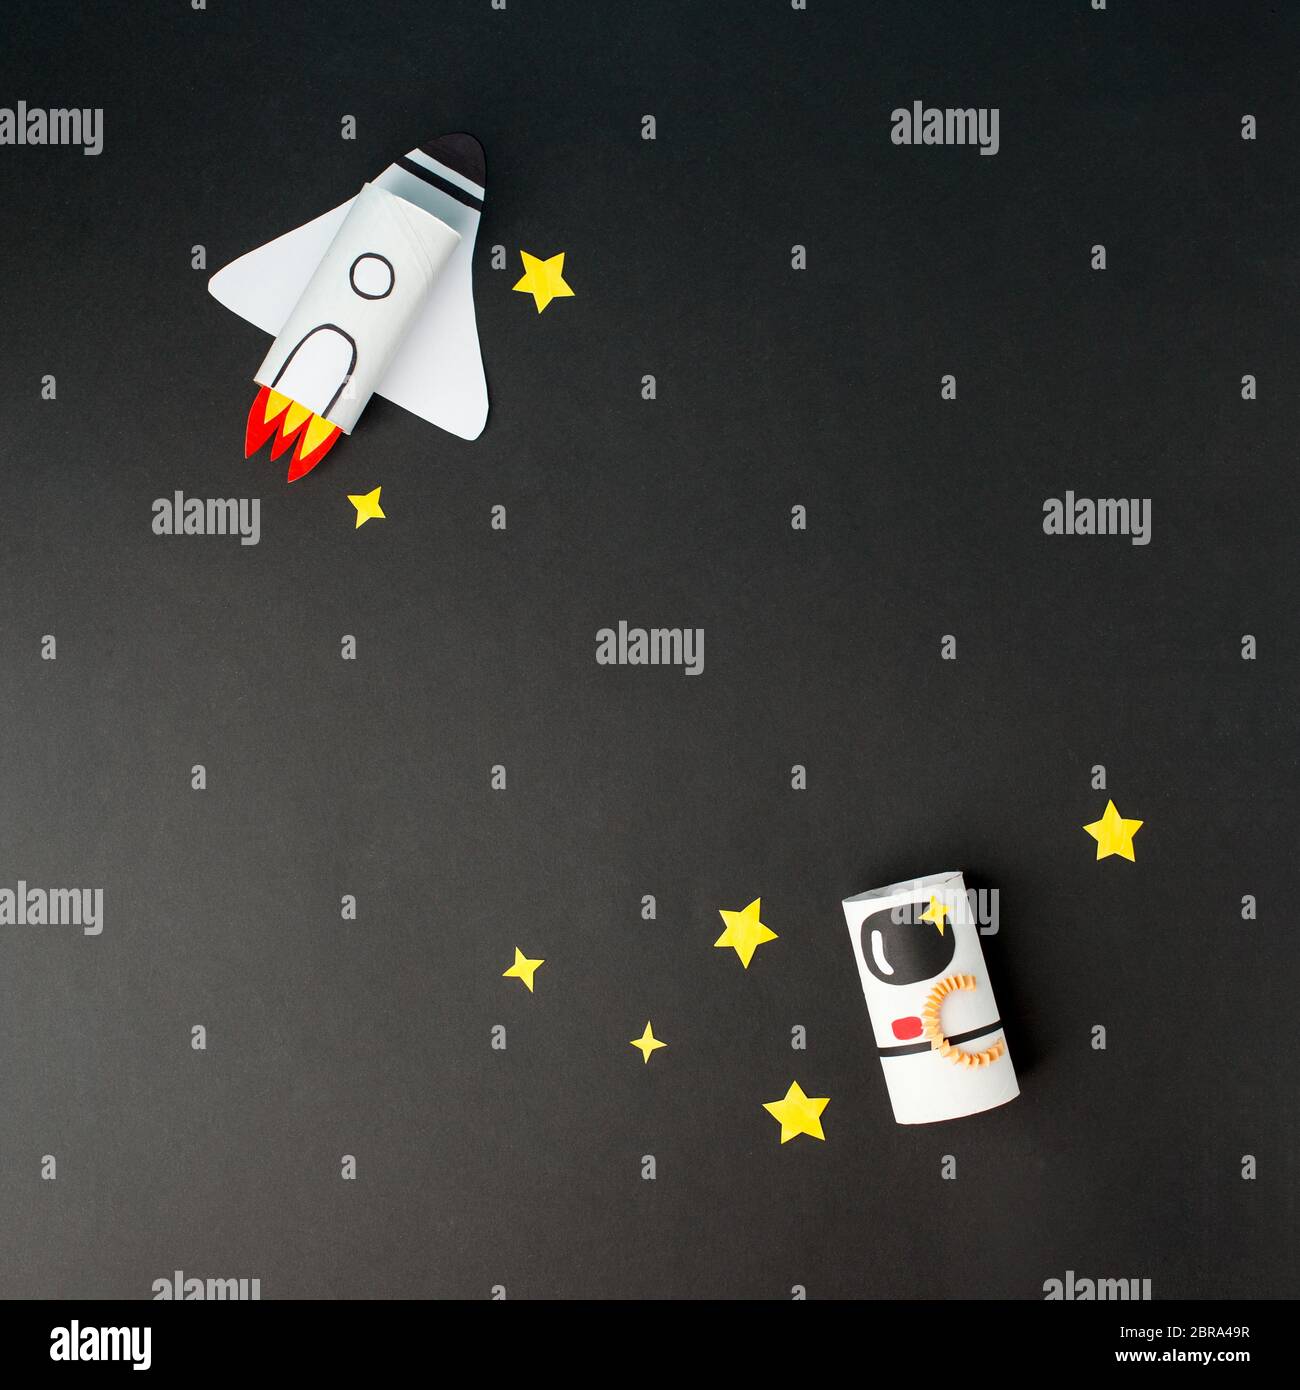 Raumschiff, Shuttle, Rakete und Astronaut auf schwarzem Hintergrund mit Kopierraum für Text. Konzept der Geschäftseinführung, Start-up, Handwerk, diy, kreativ Stockfoto